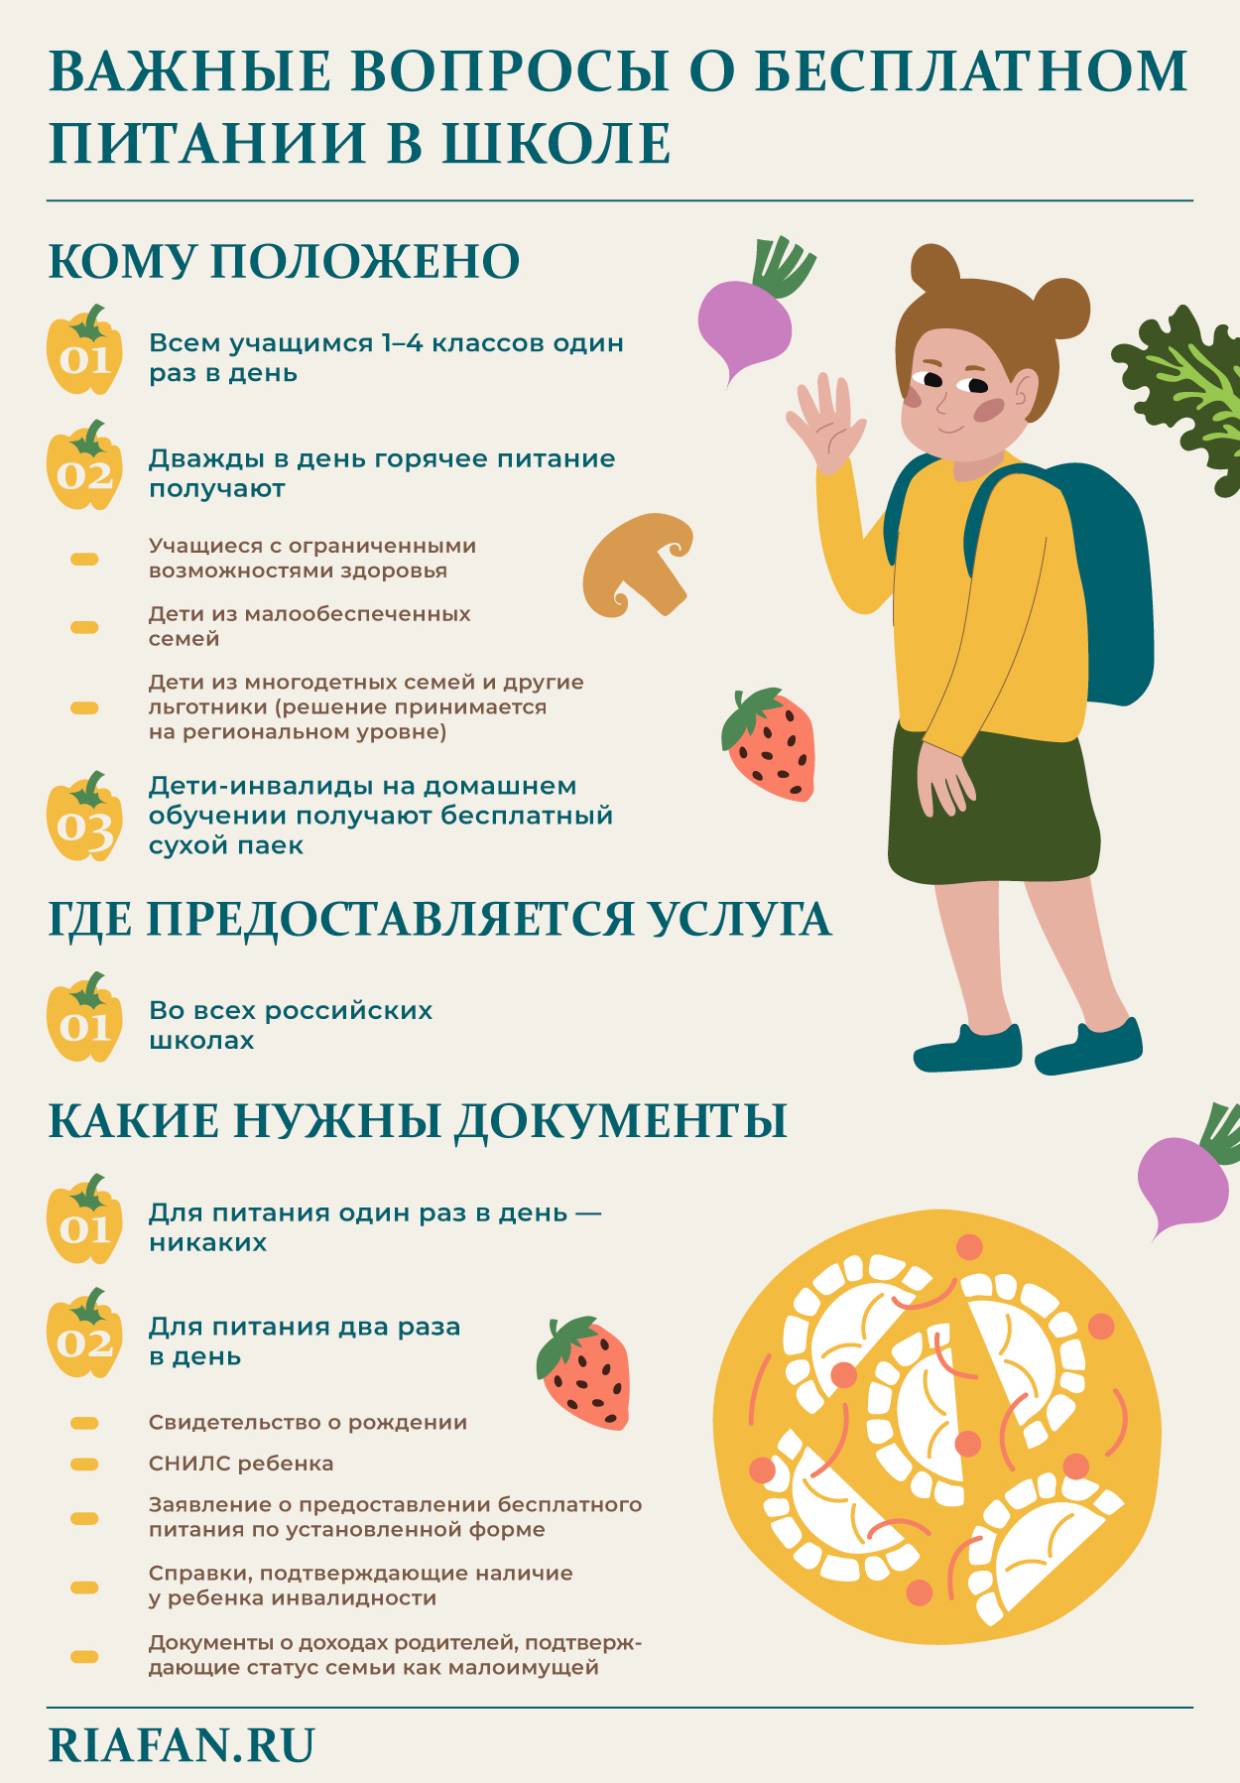 Эксперт Чернигов рассказал, кому положено бесплатное питание в школе в 2021 году